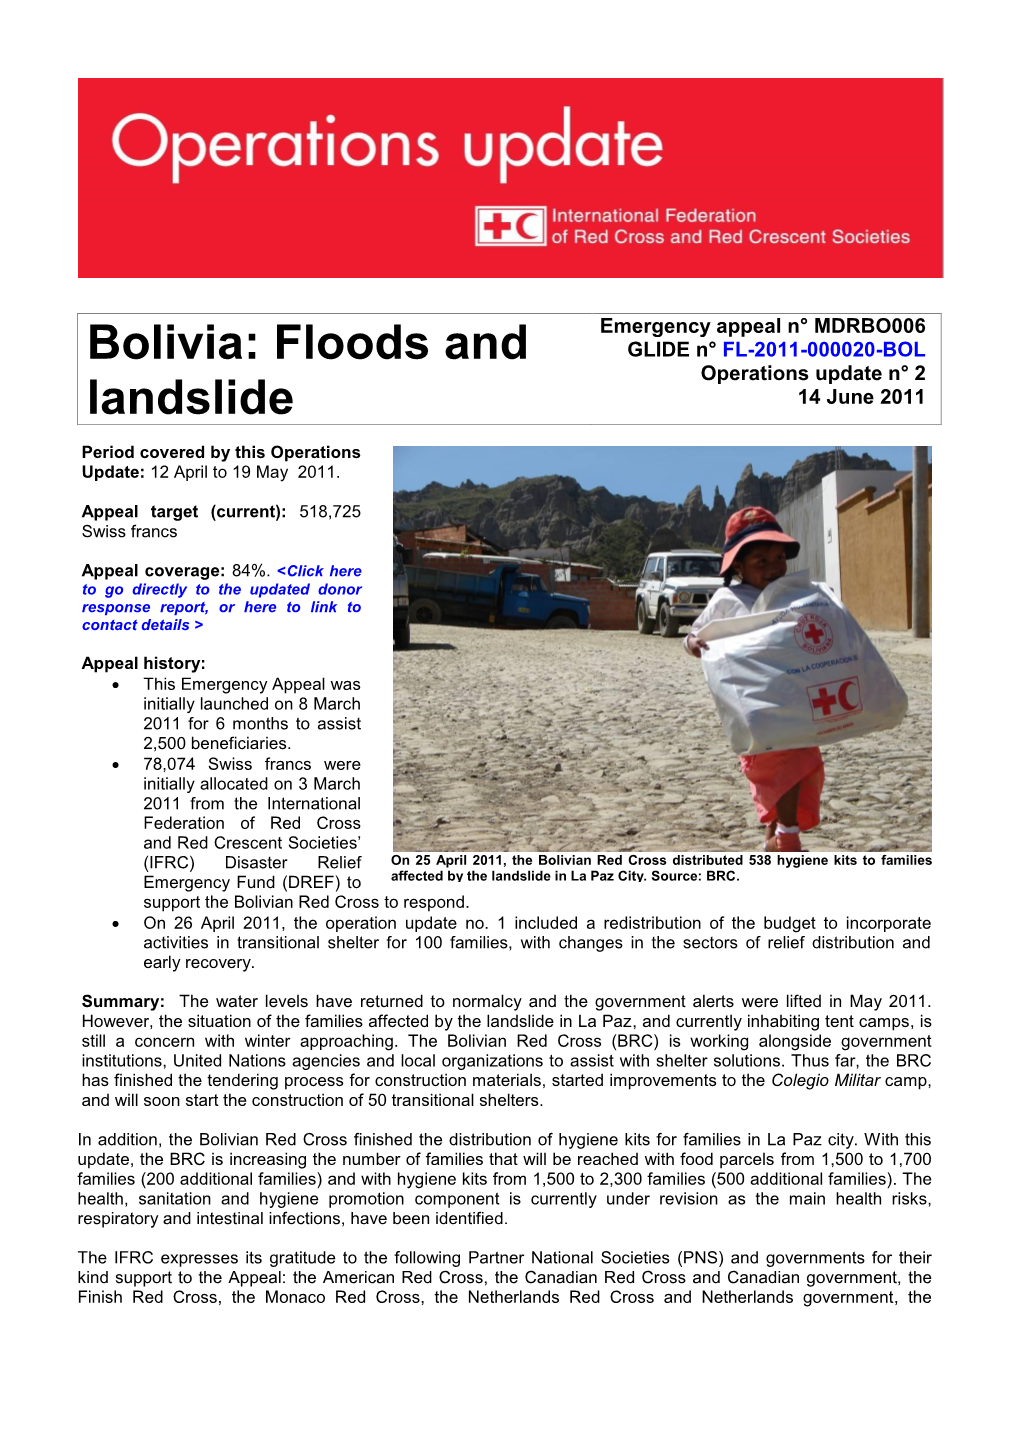 Bolivia: Floods and Landslide